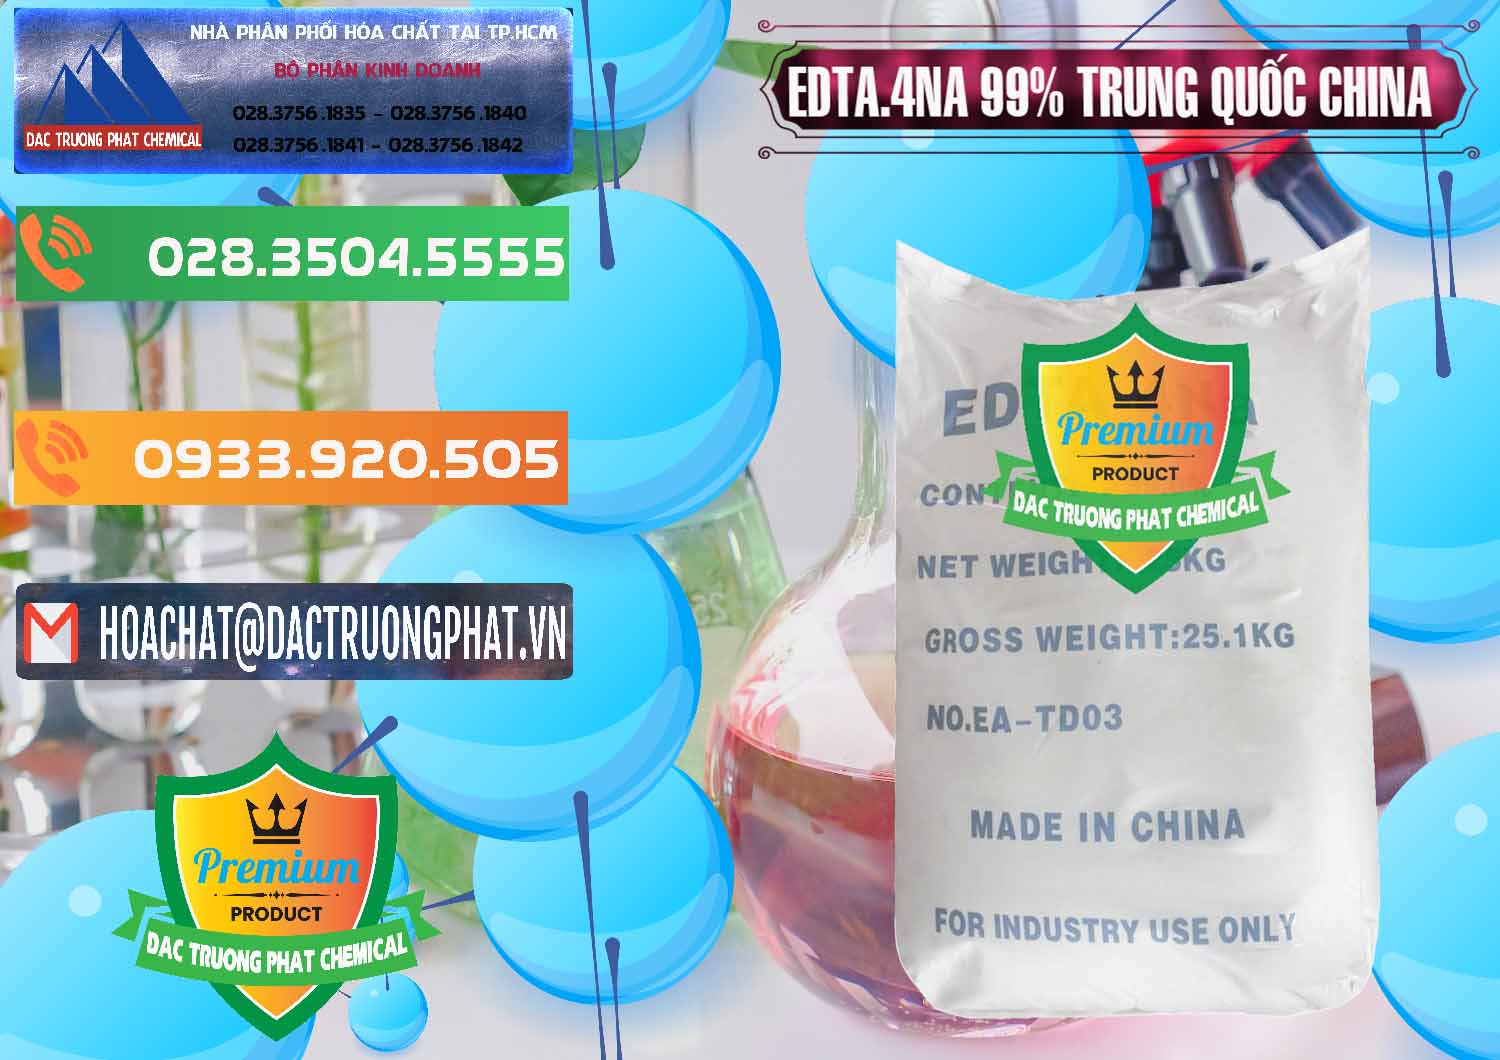 Đơn vị chuyên bán _ cung ứng EDTA.4NA - EDTA Muối 99% Trung Quốc China - 0292 - Nơi phân phối _ nhập khẩu hóa chất tại TP.HCM - hoachatxulynuoc.com.vn